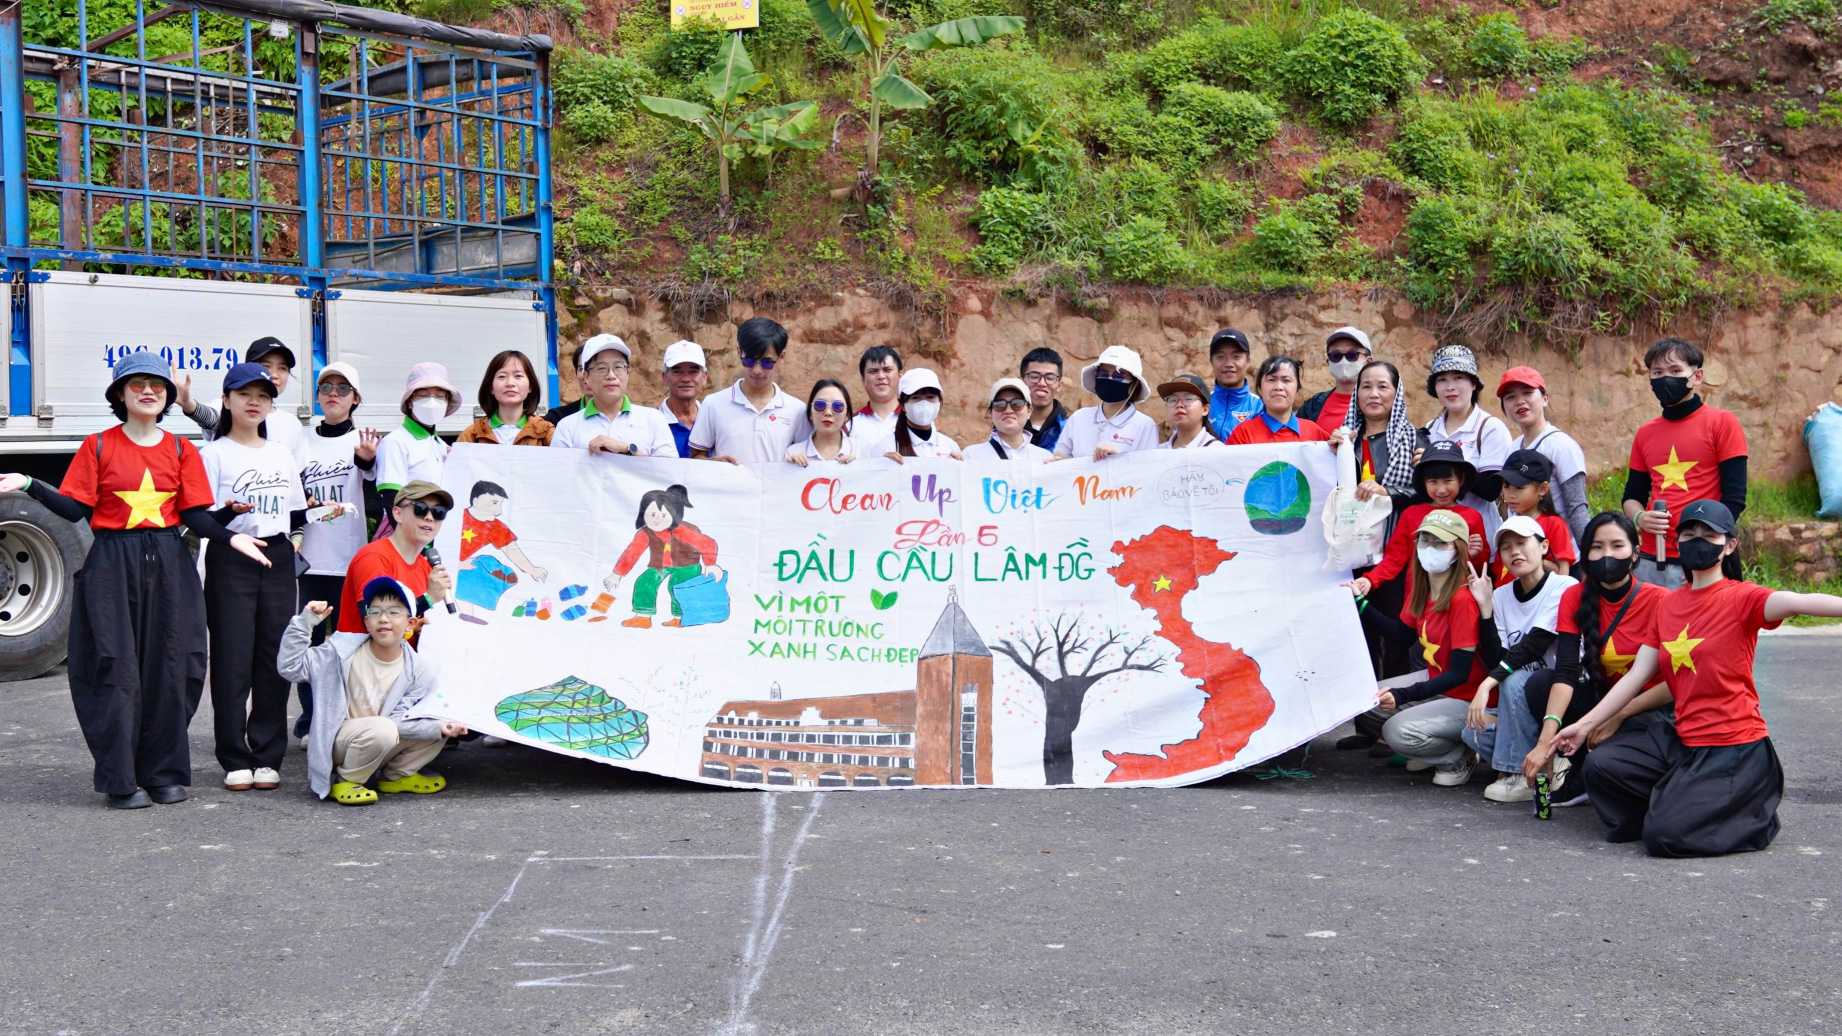 Đà Lạt: Thu gom được 700kg rác trong chiến dịch “Clean up Việt Nam”